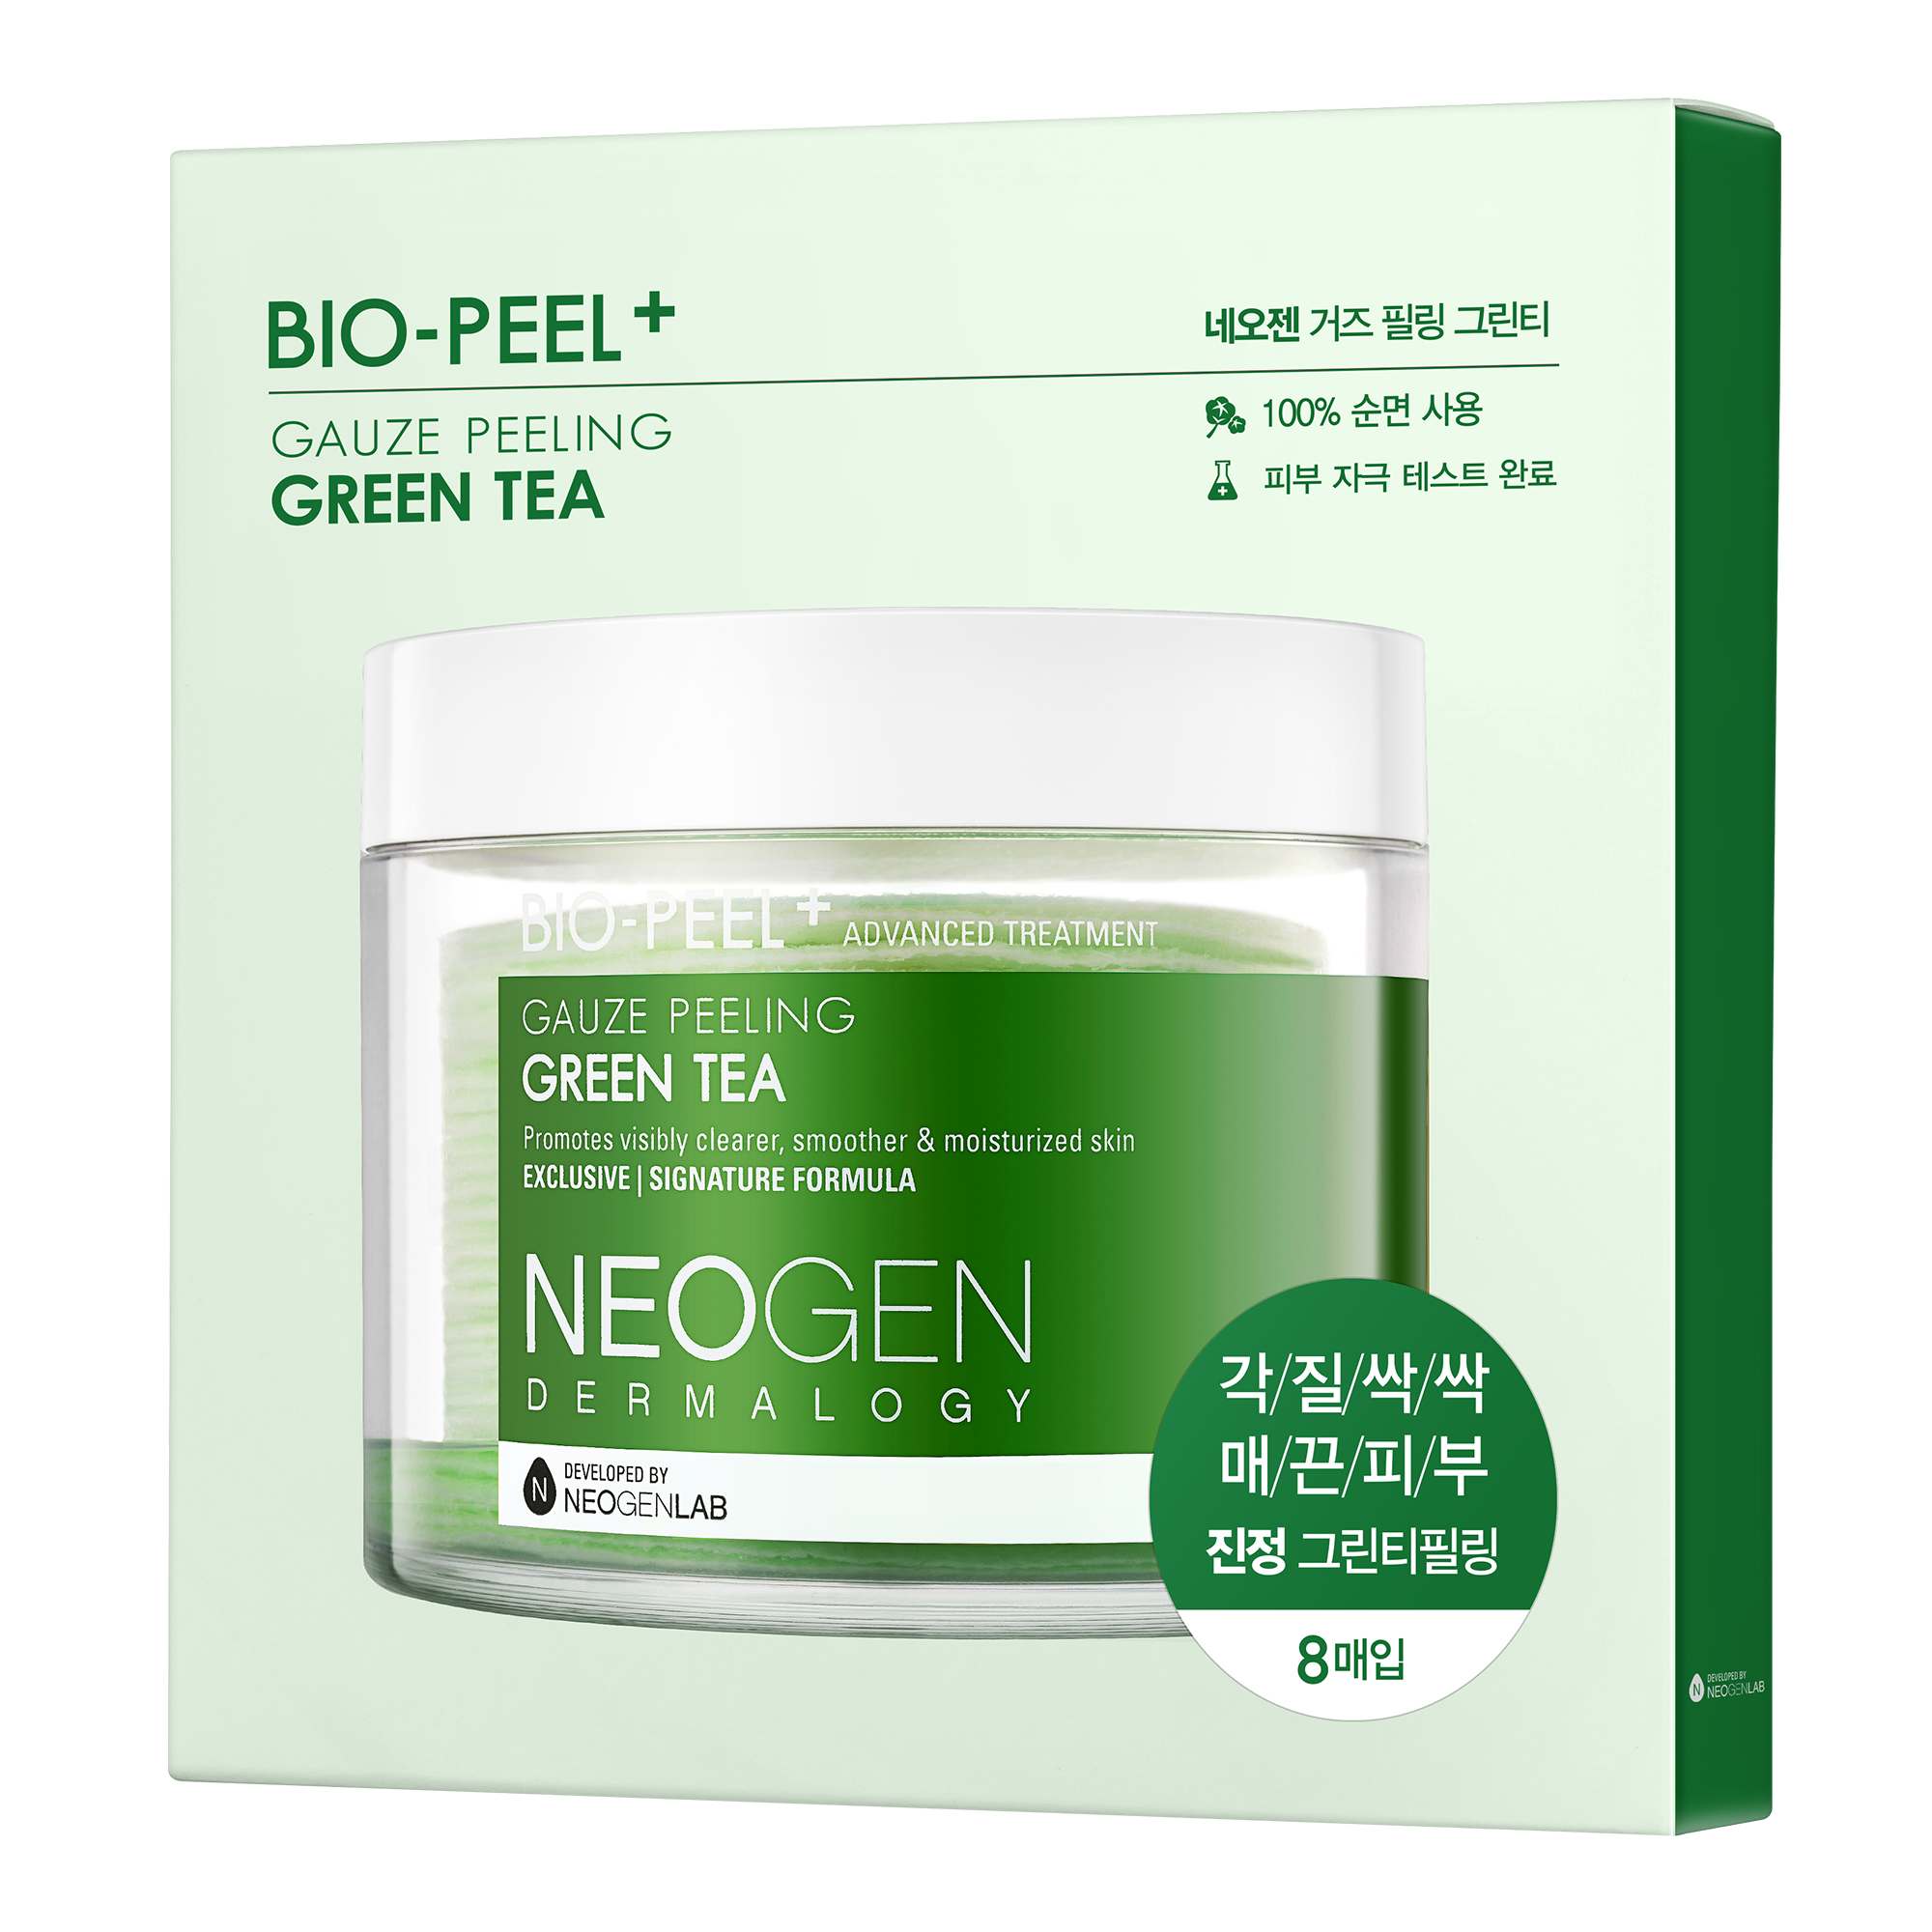 NEOGEN DERMALOGY Bio-Peel Gauze Peeling Green Tea 2.48 oz / 76ml (8 Pads)